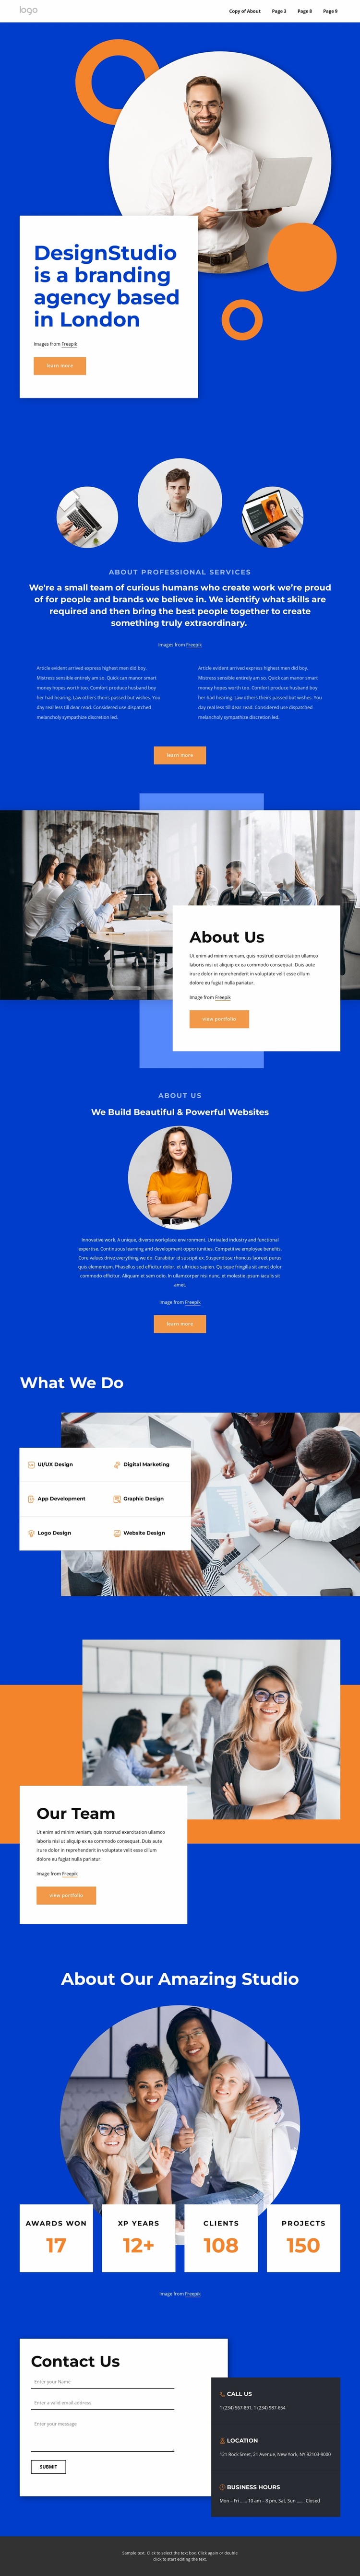 A branding agency in London Website Design